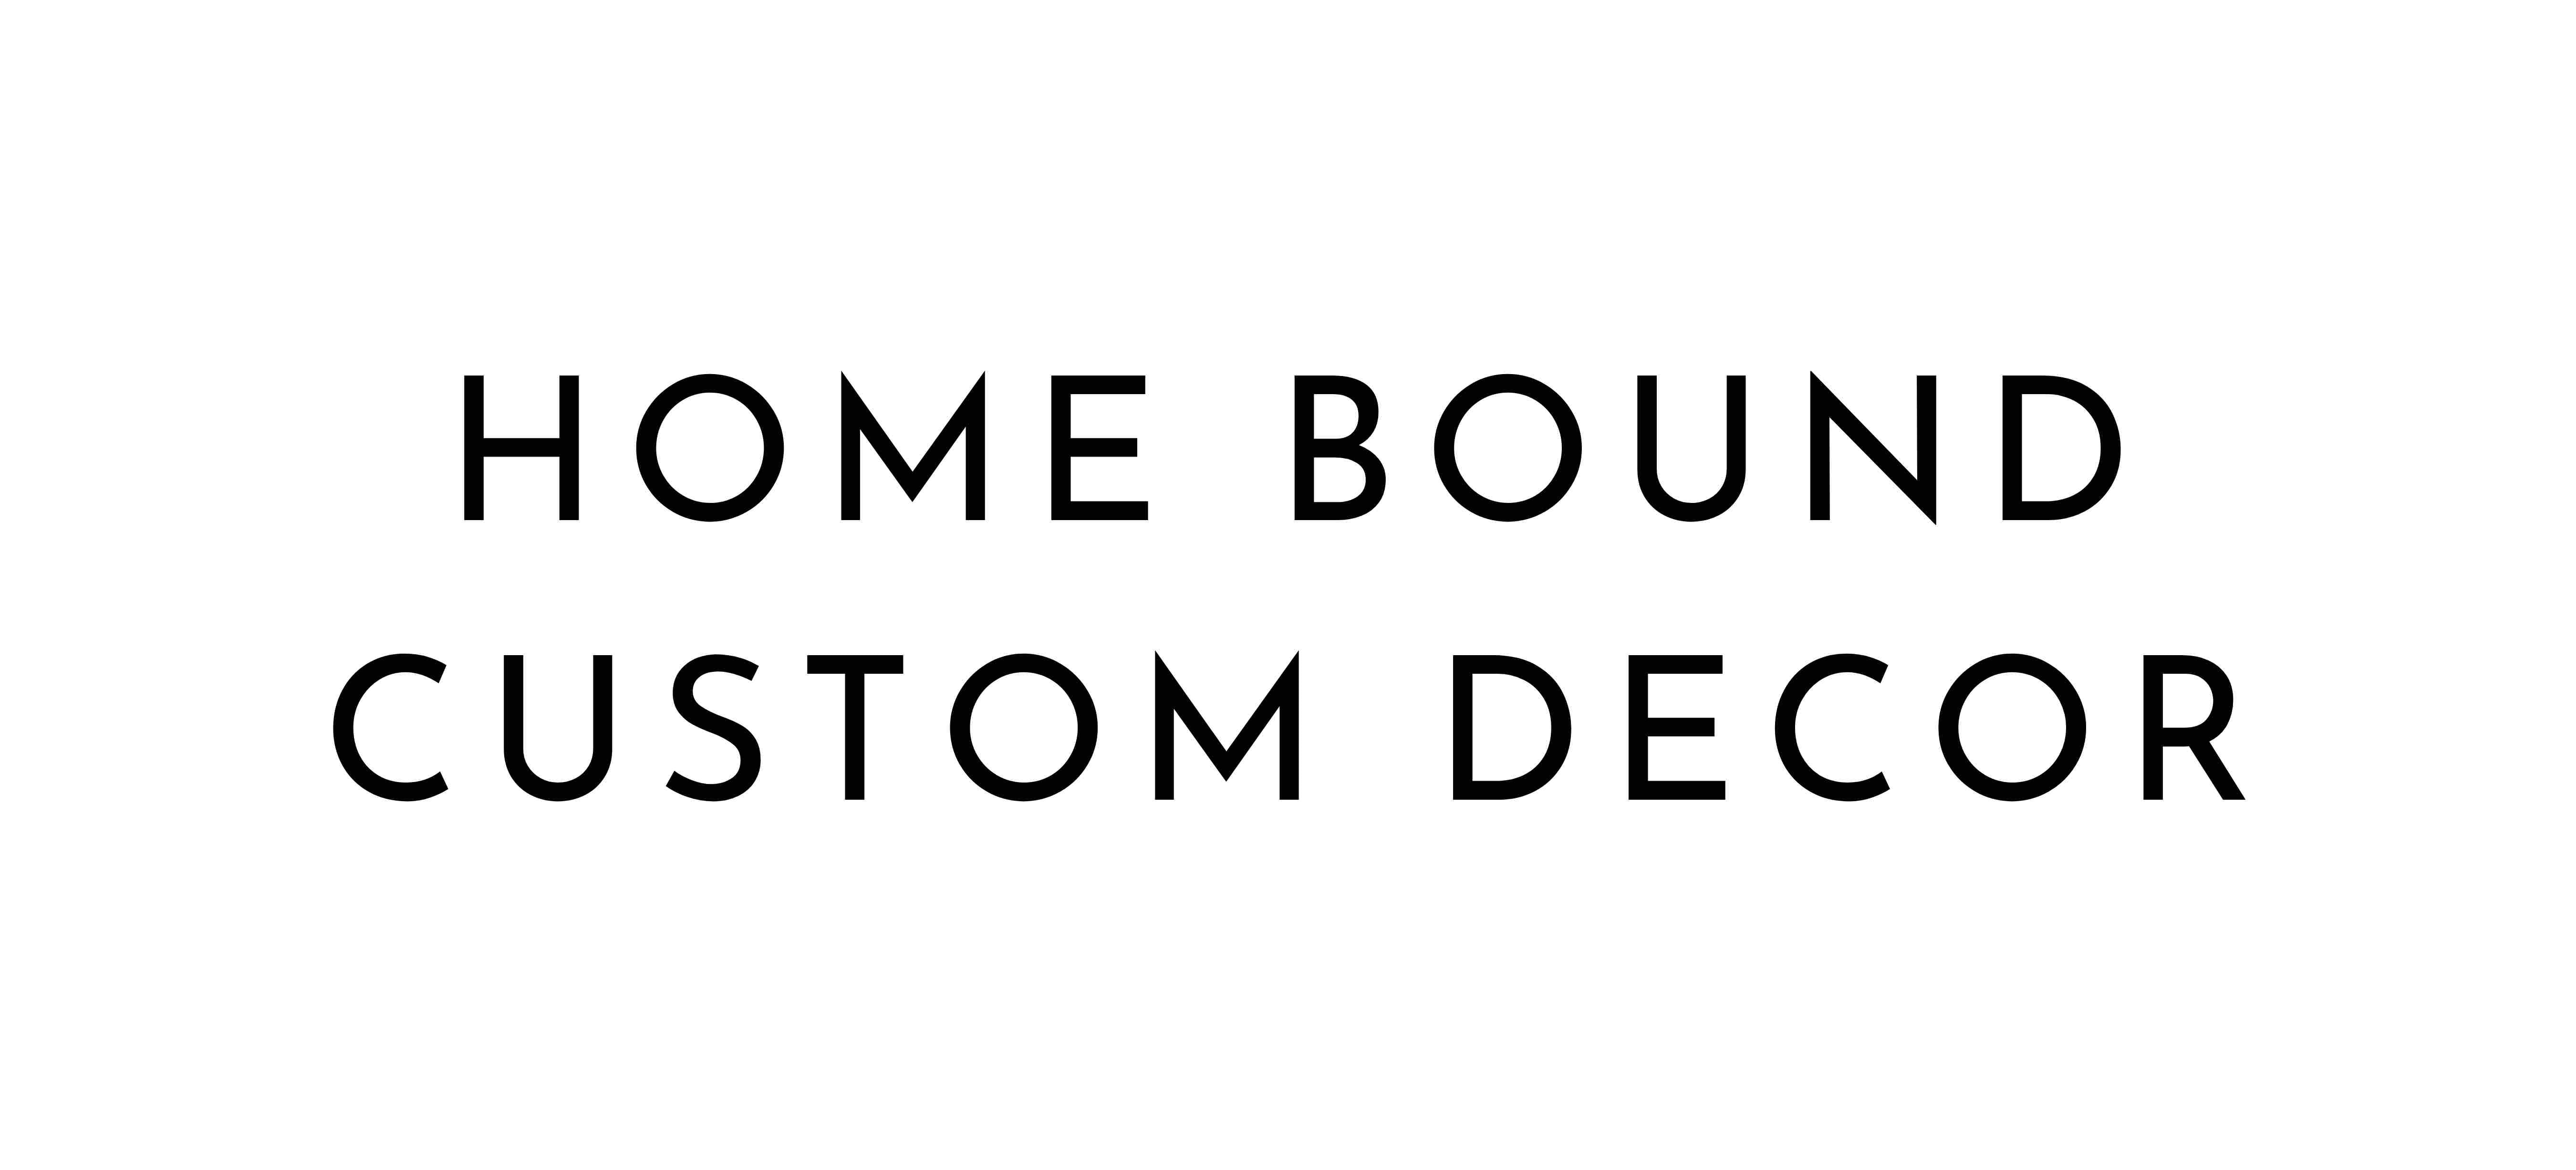 Home Bound Custom Decor